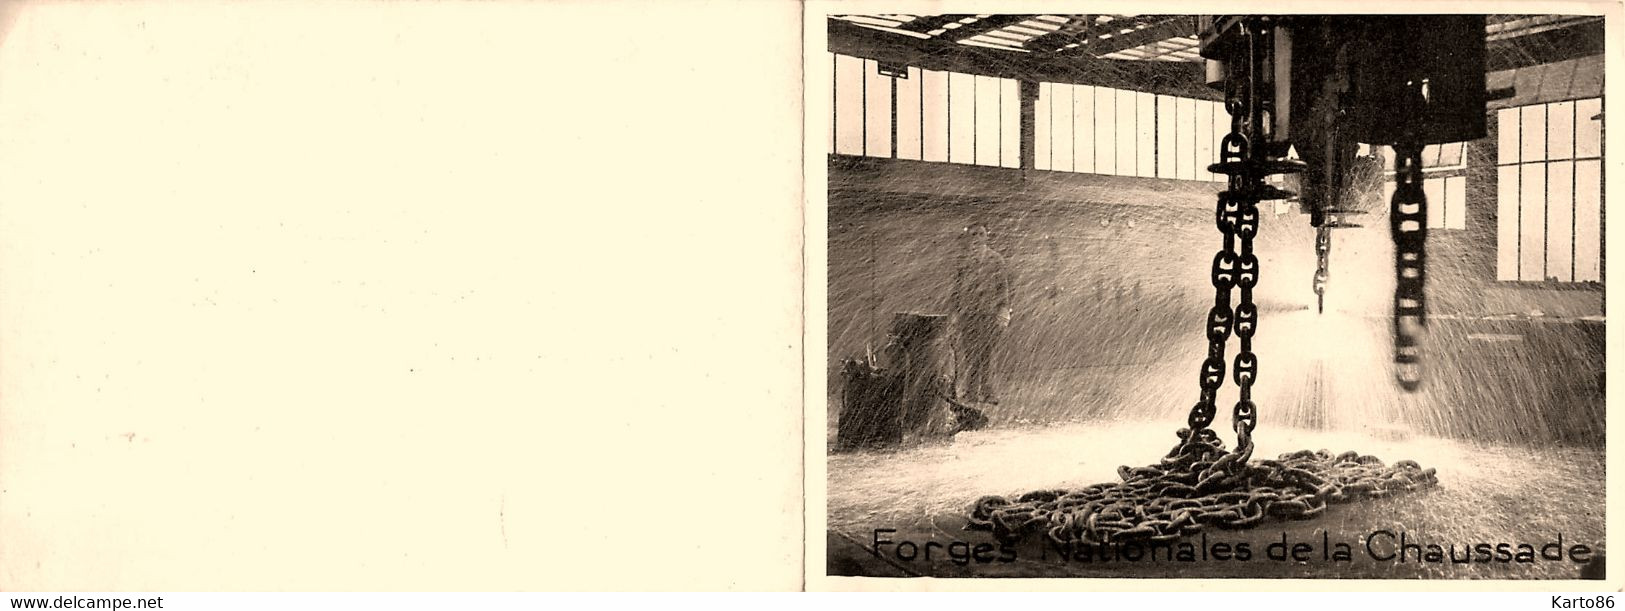 Forges Nationales De La Chaussade * Guérigny * Carte De Veux Ancienne Illustrée * Thème Forge Aciérie Aciéries Mine Mine - Guerigny